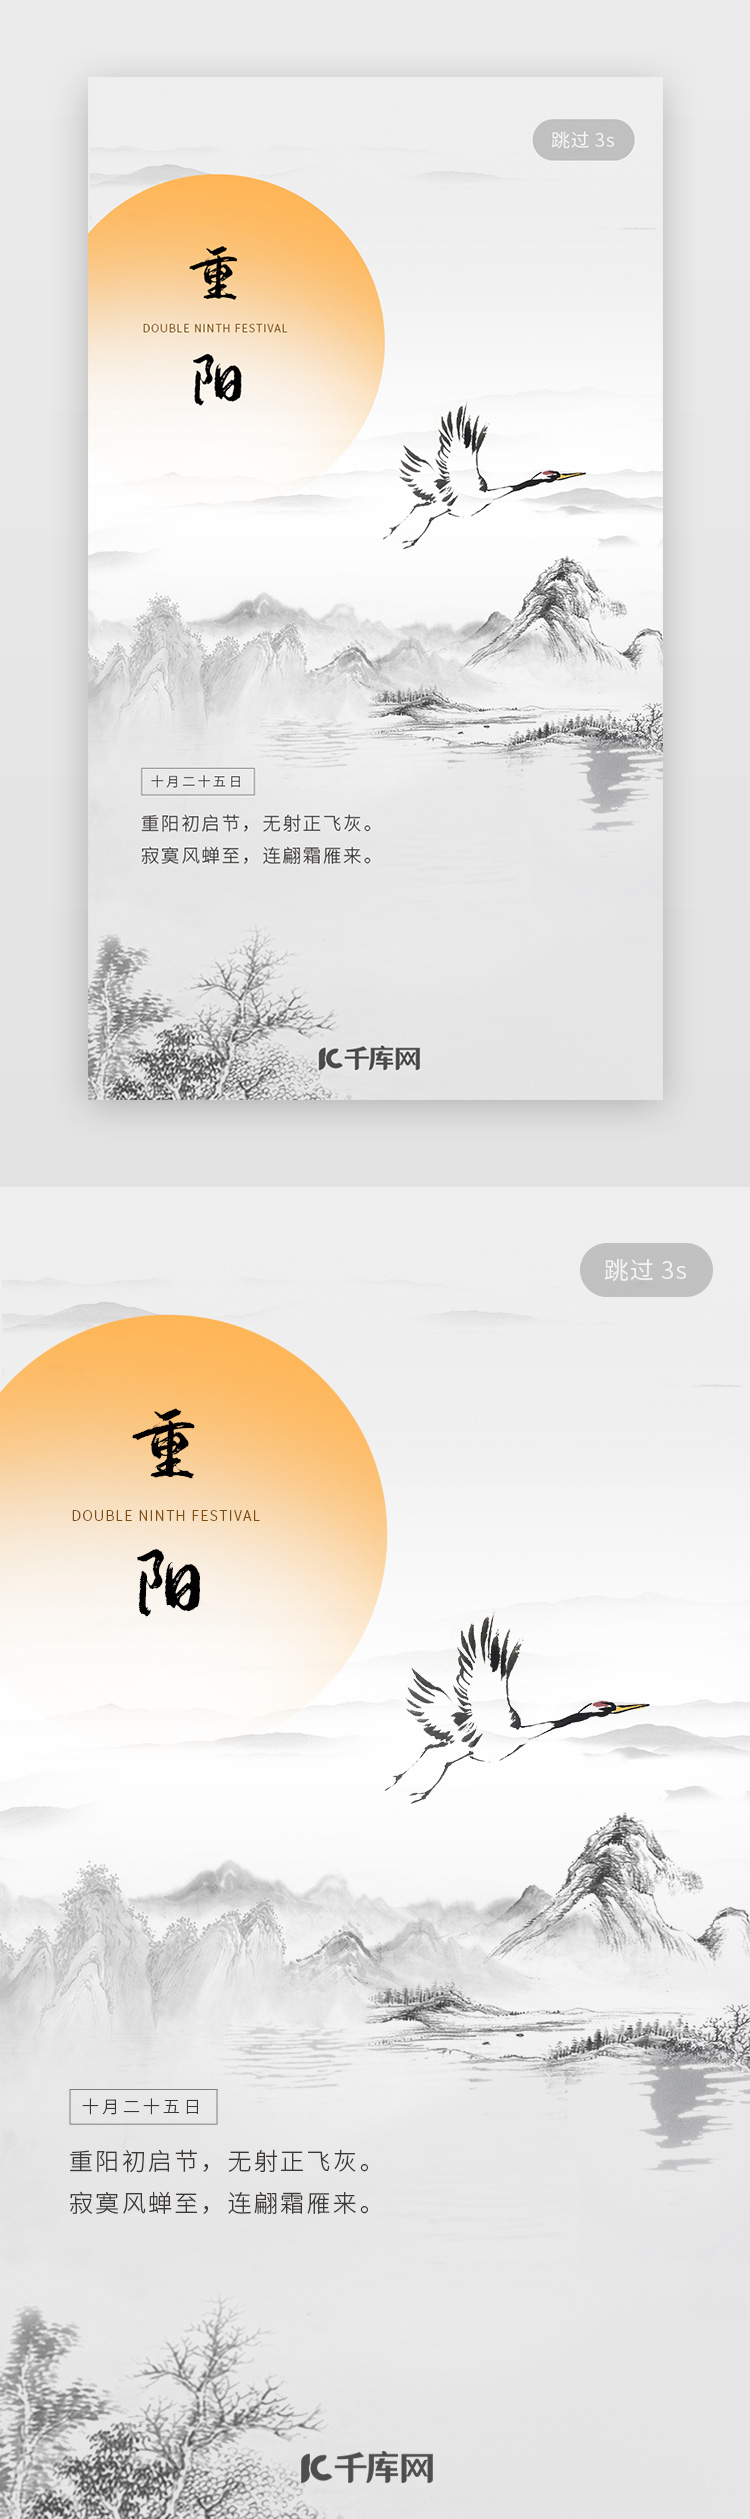 中国传统节日重阳节手机闪屏图片